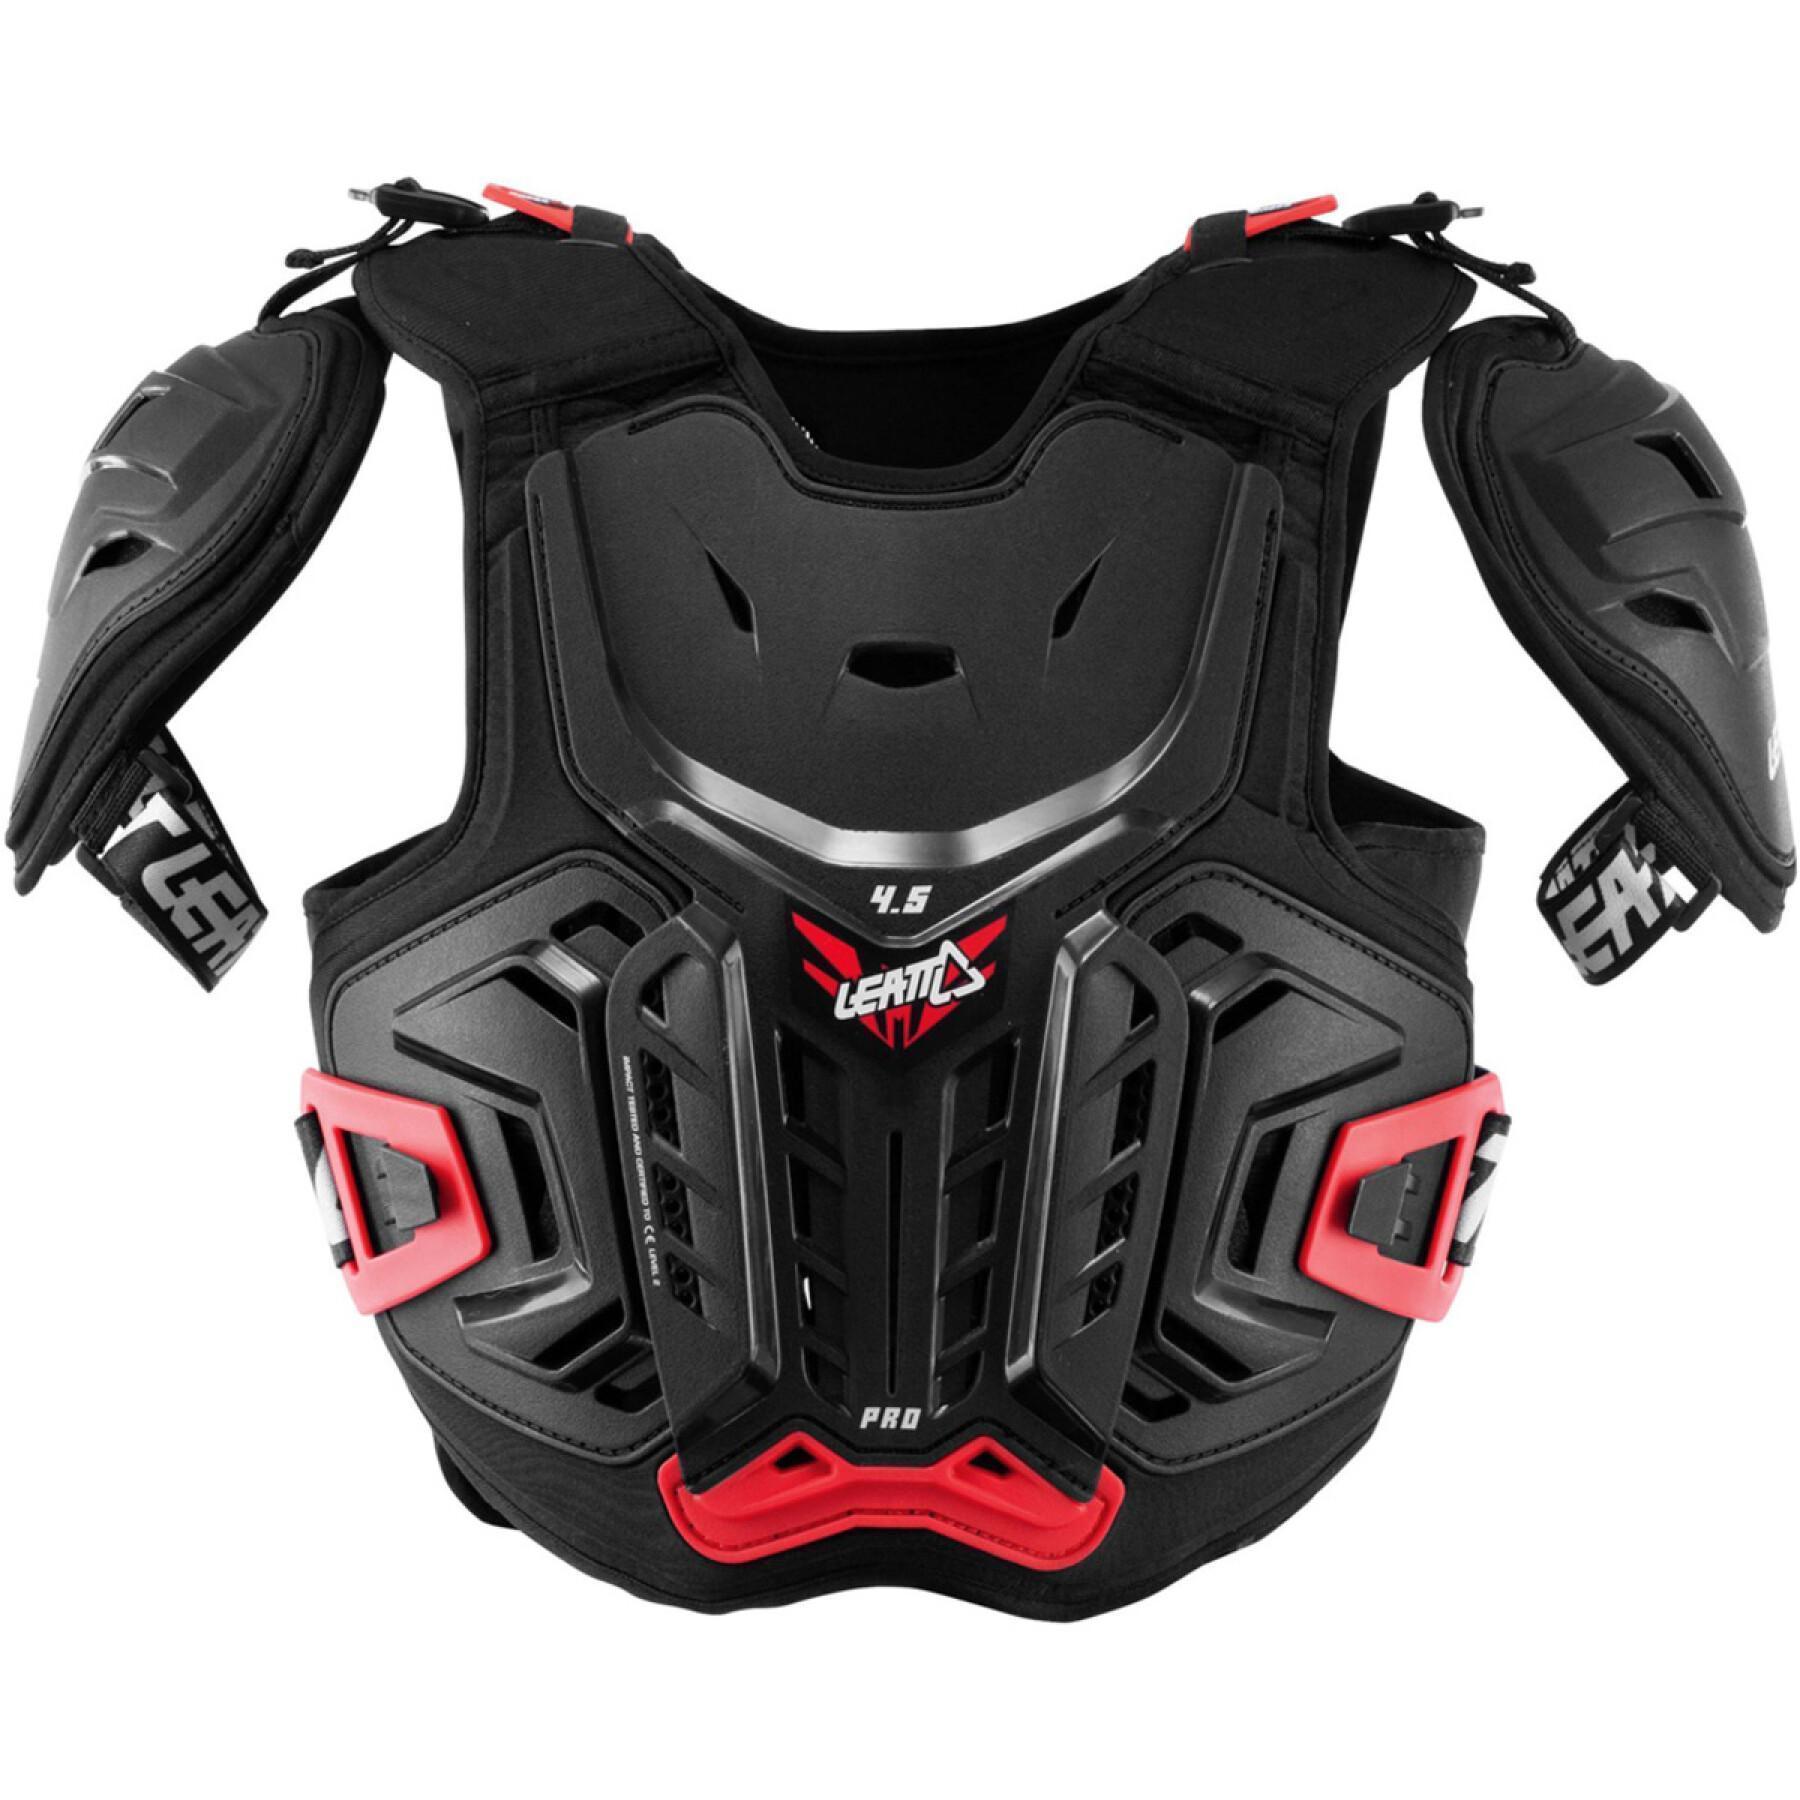 Bröstskydd för motorcykel för barn Leatt cuirasse 4.5 Pro